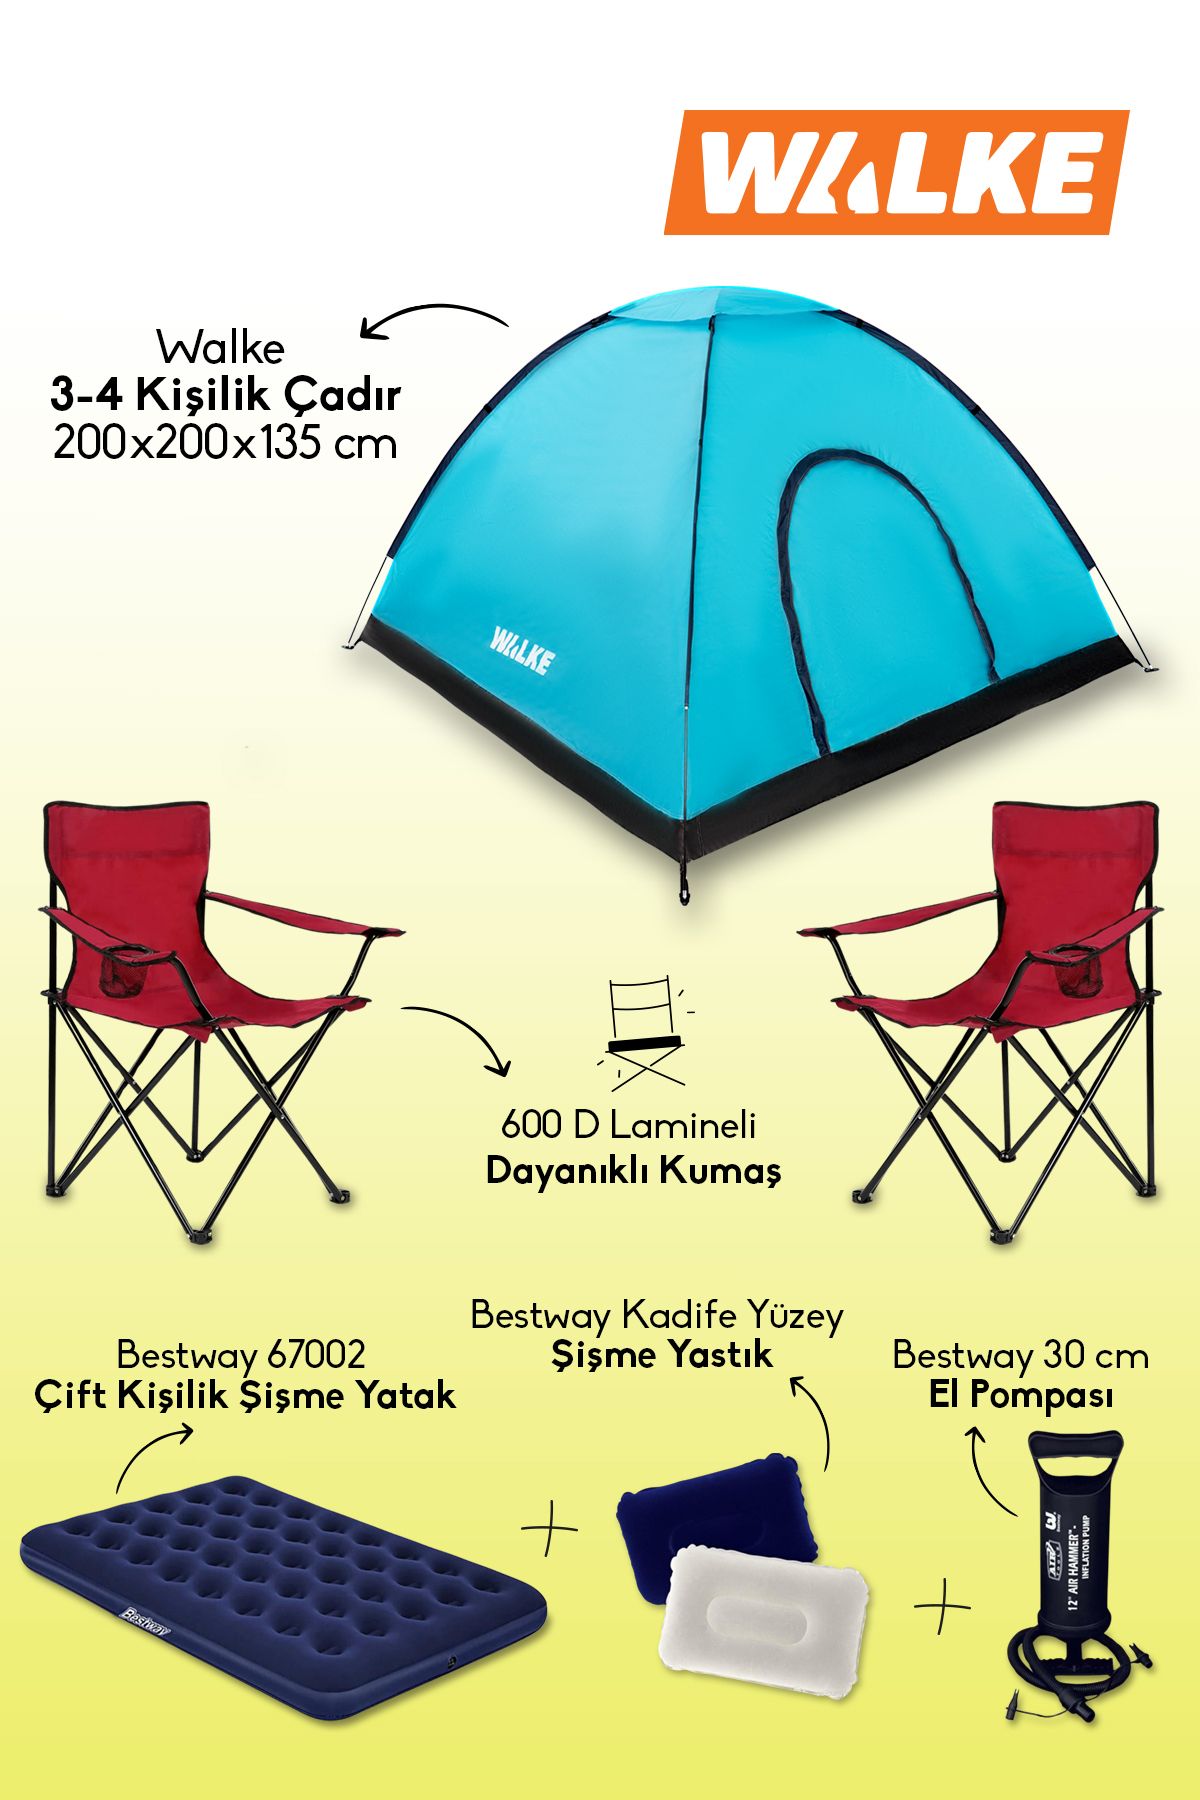 Walke Lüks Kamp Seti 4 Kişilik Çadır Çift Kişilik Yatak 2 Adet Kırmızı Sandalye 2 Yastık Pompa